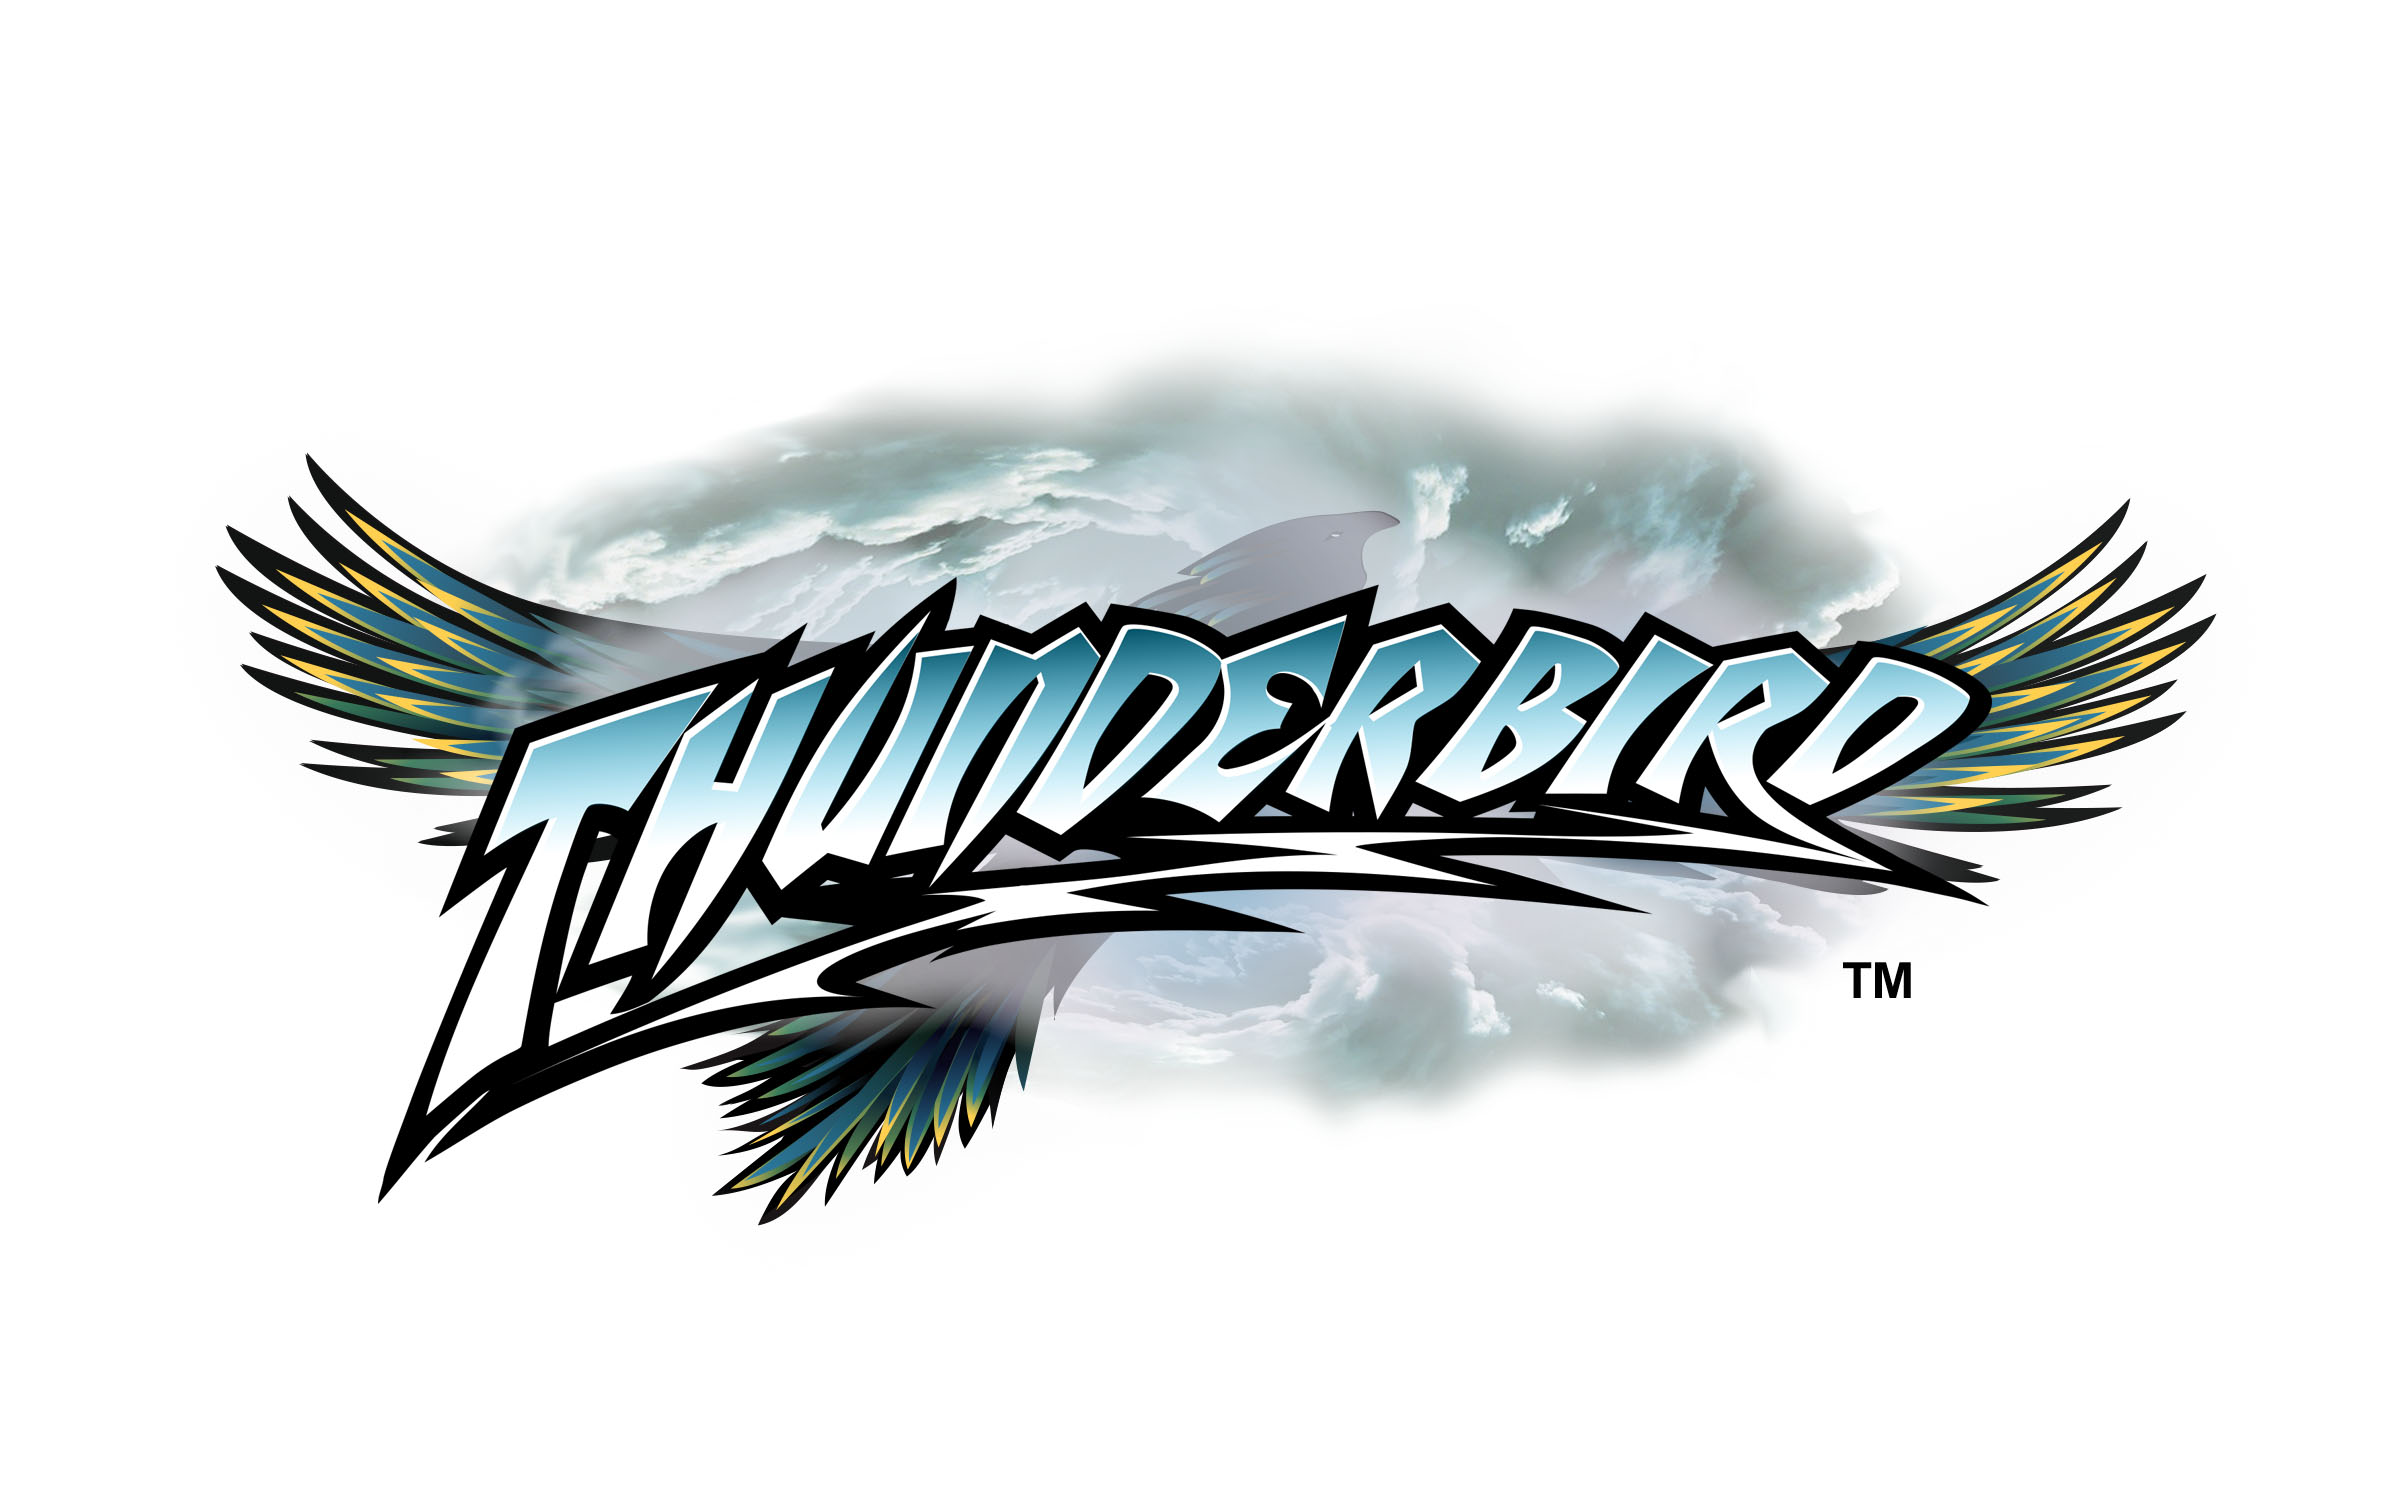 Thunderbird roller coaster logo